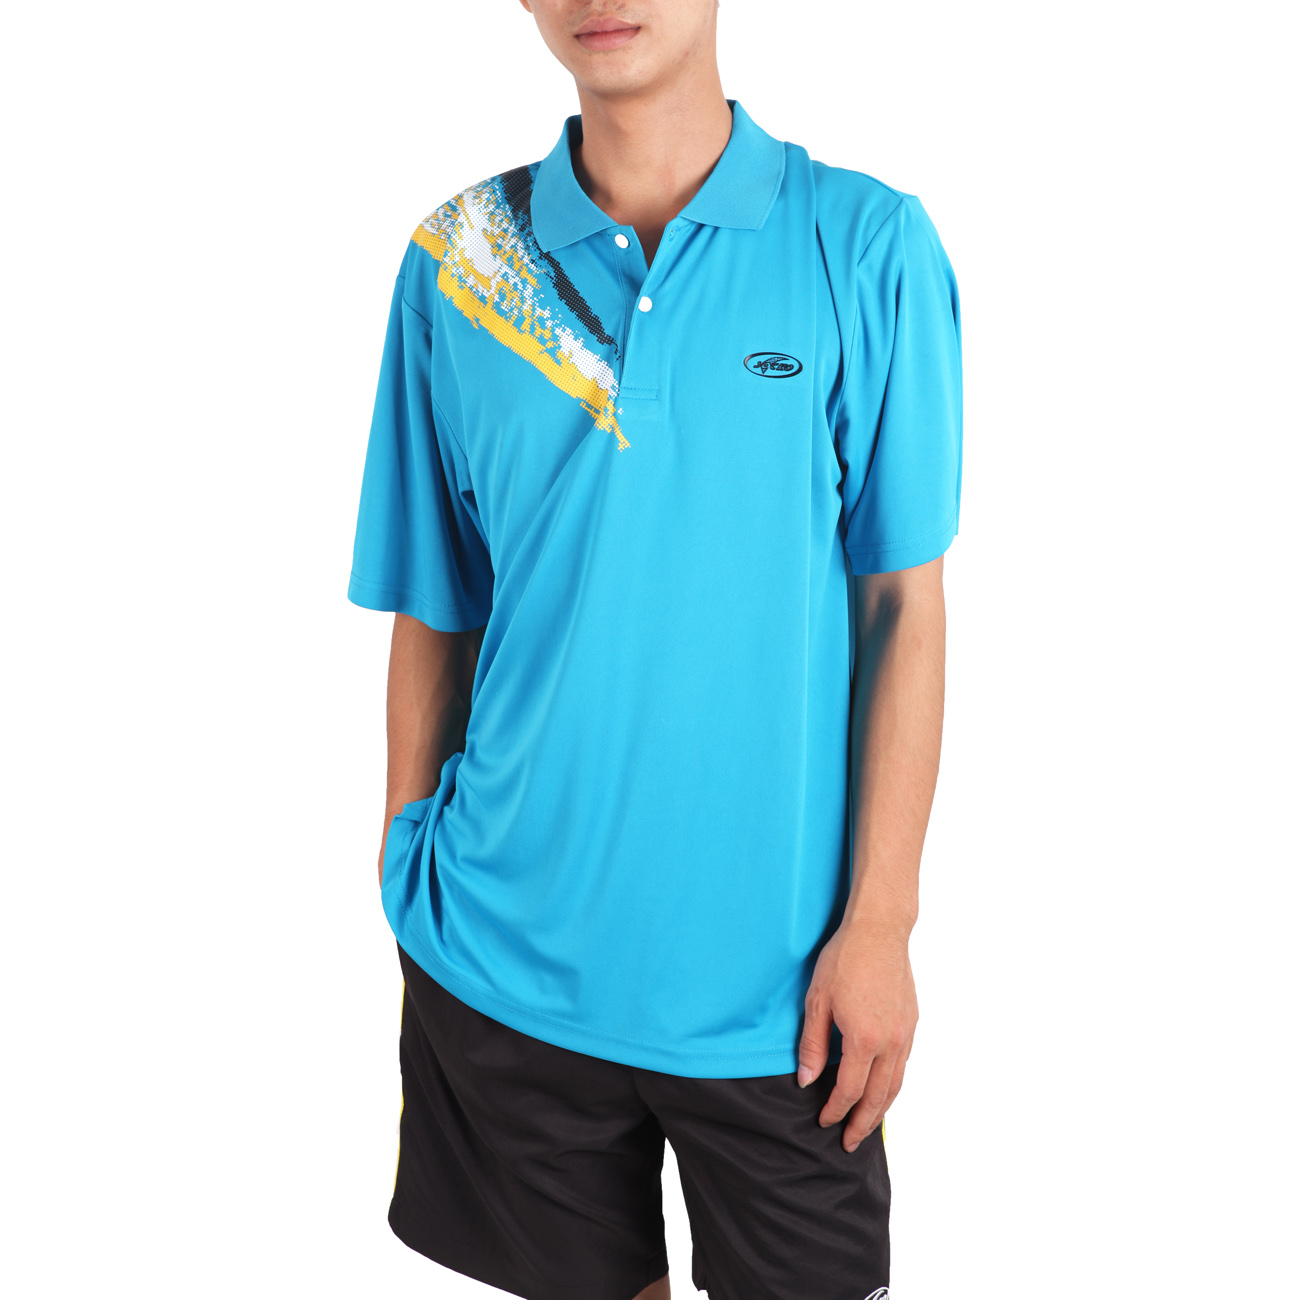 SOCKO/圣蓝戈 正品新款休闲羽毛球乒乓球服装吸汗透气运动T恤3301